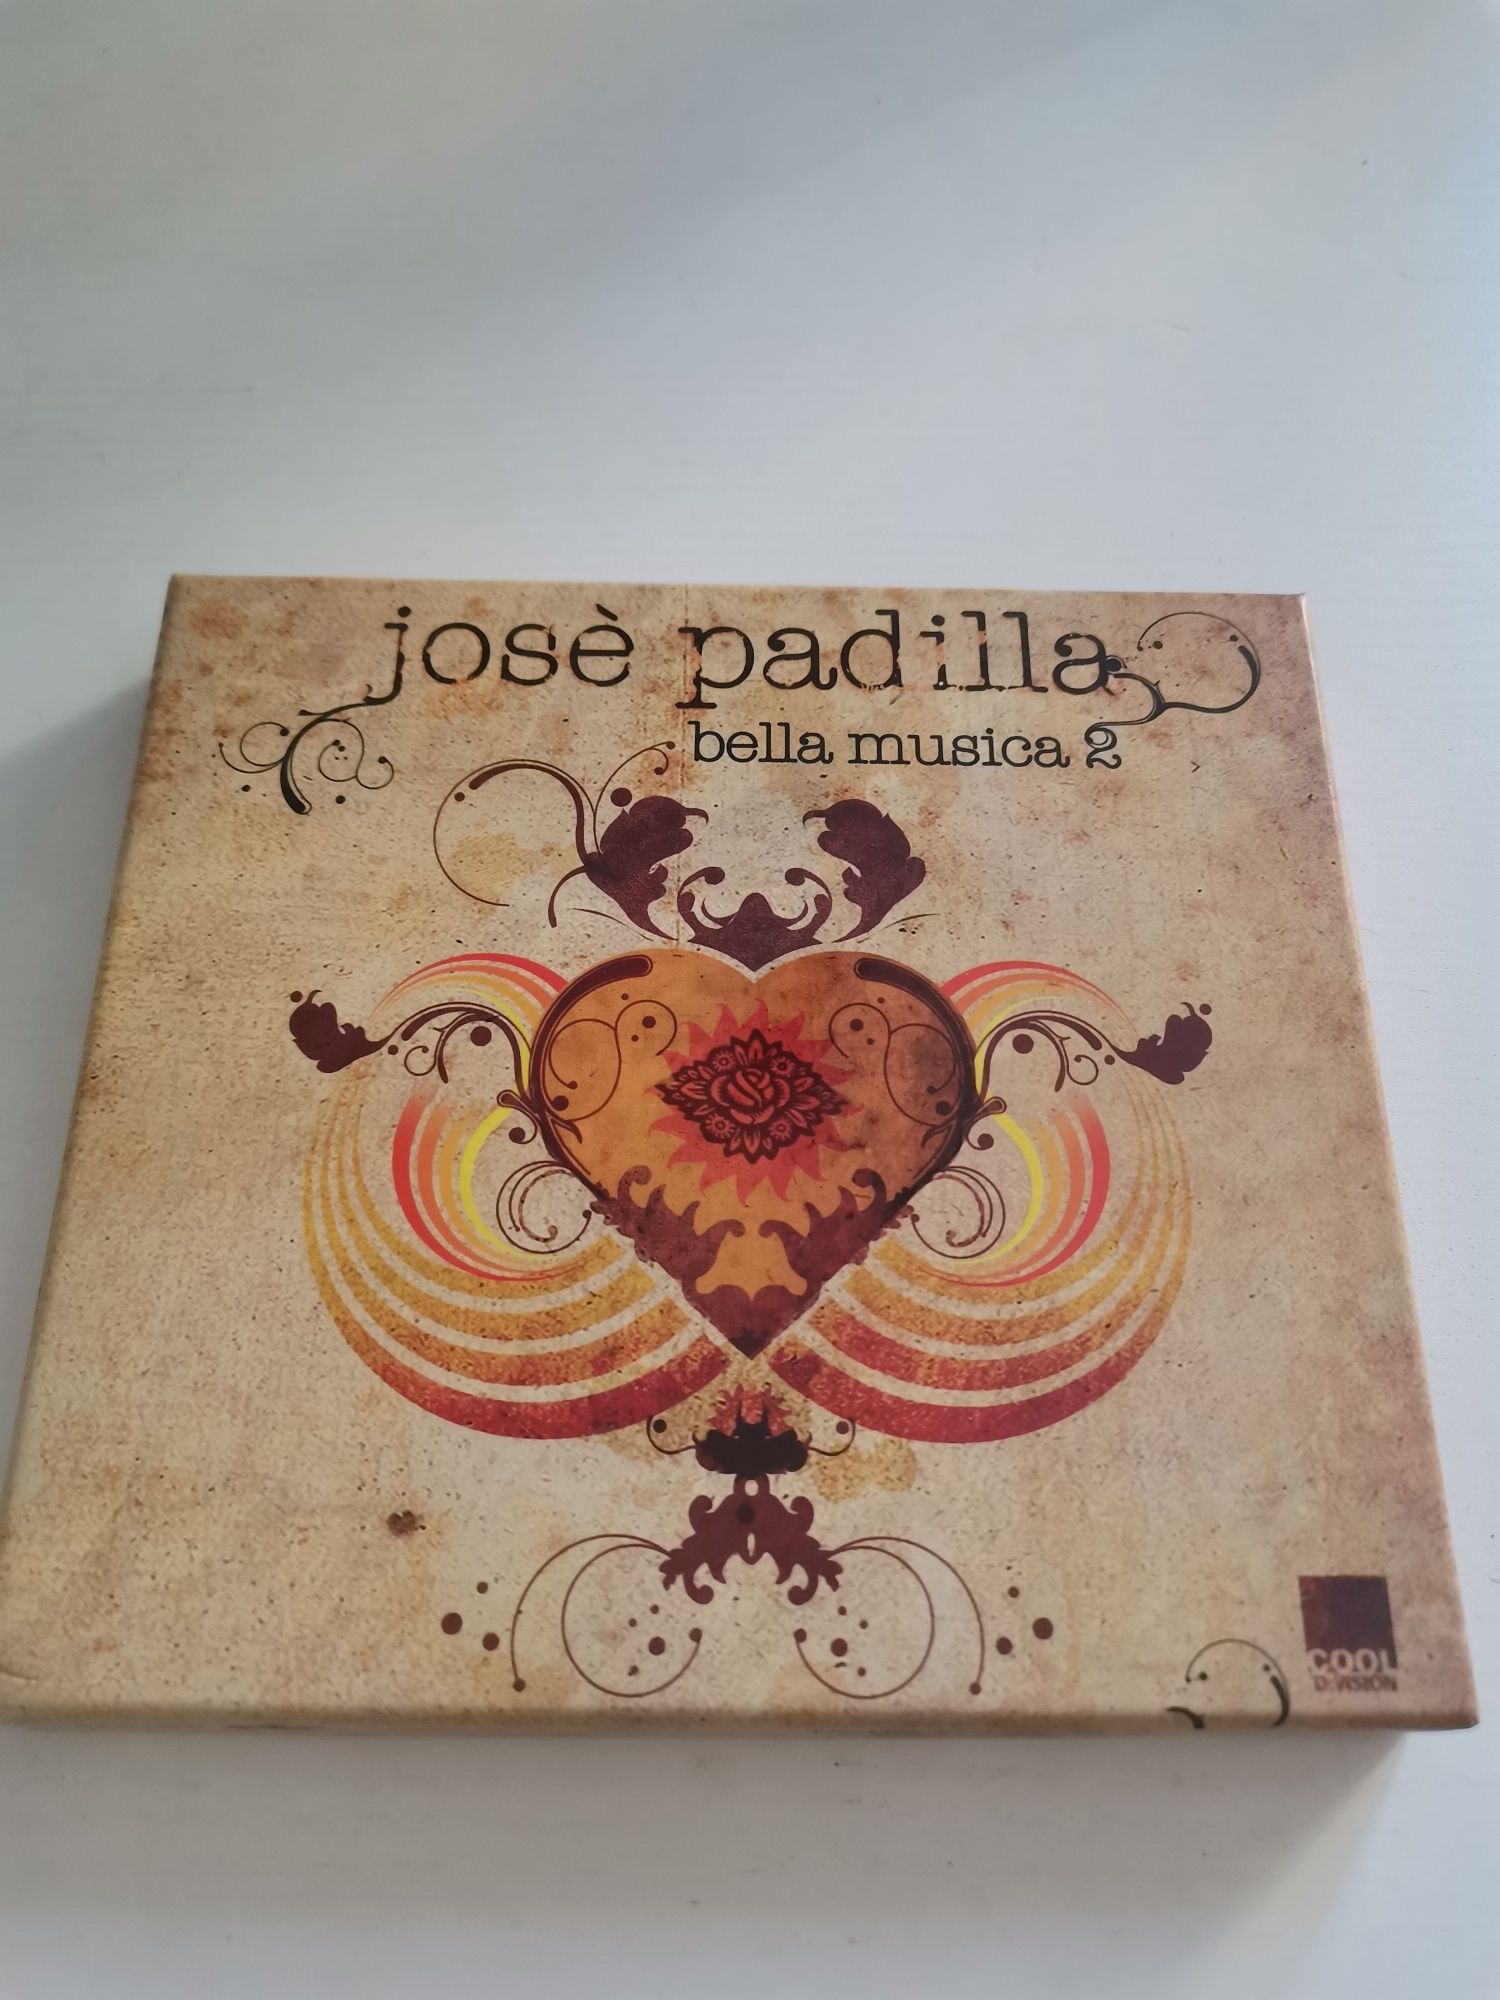 Jose padilla - Bella musica 2